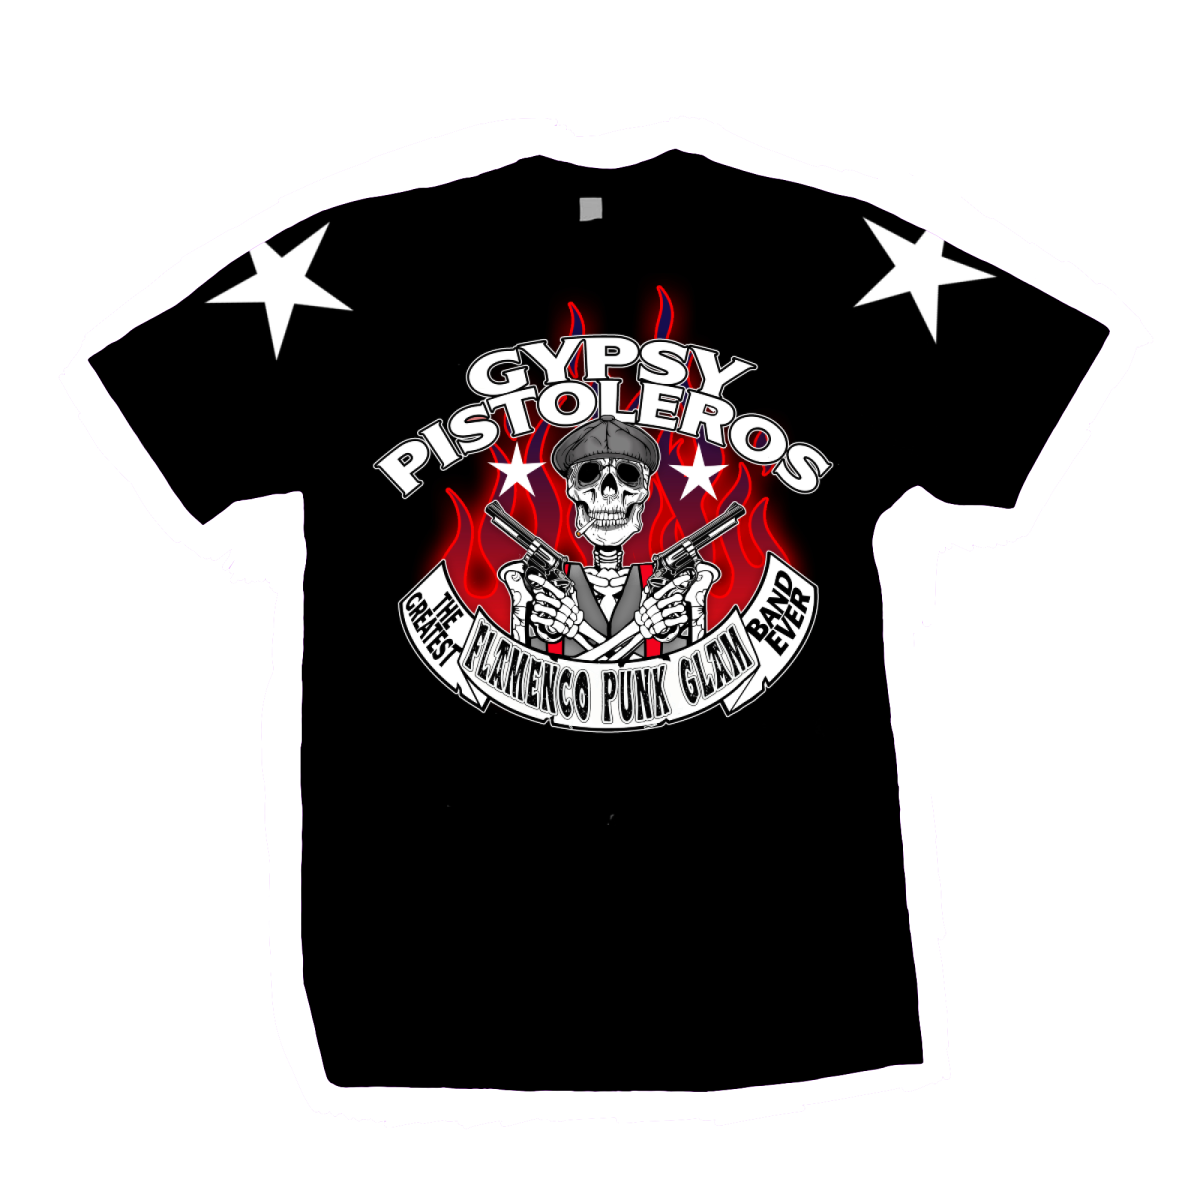 Gypsy Pistoleros "Duende a Go Go Loco" T shirt